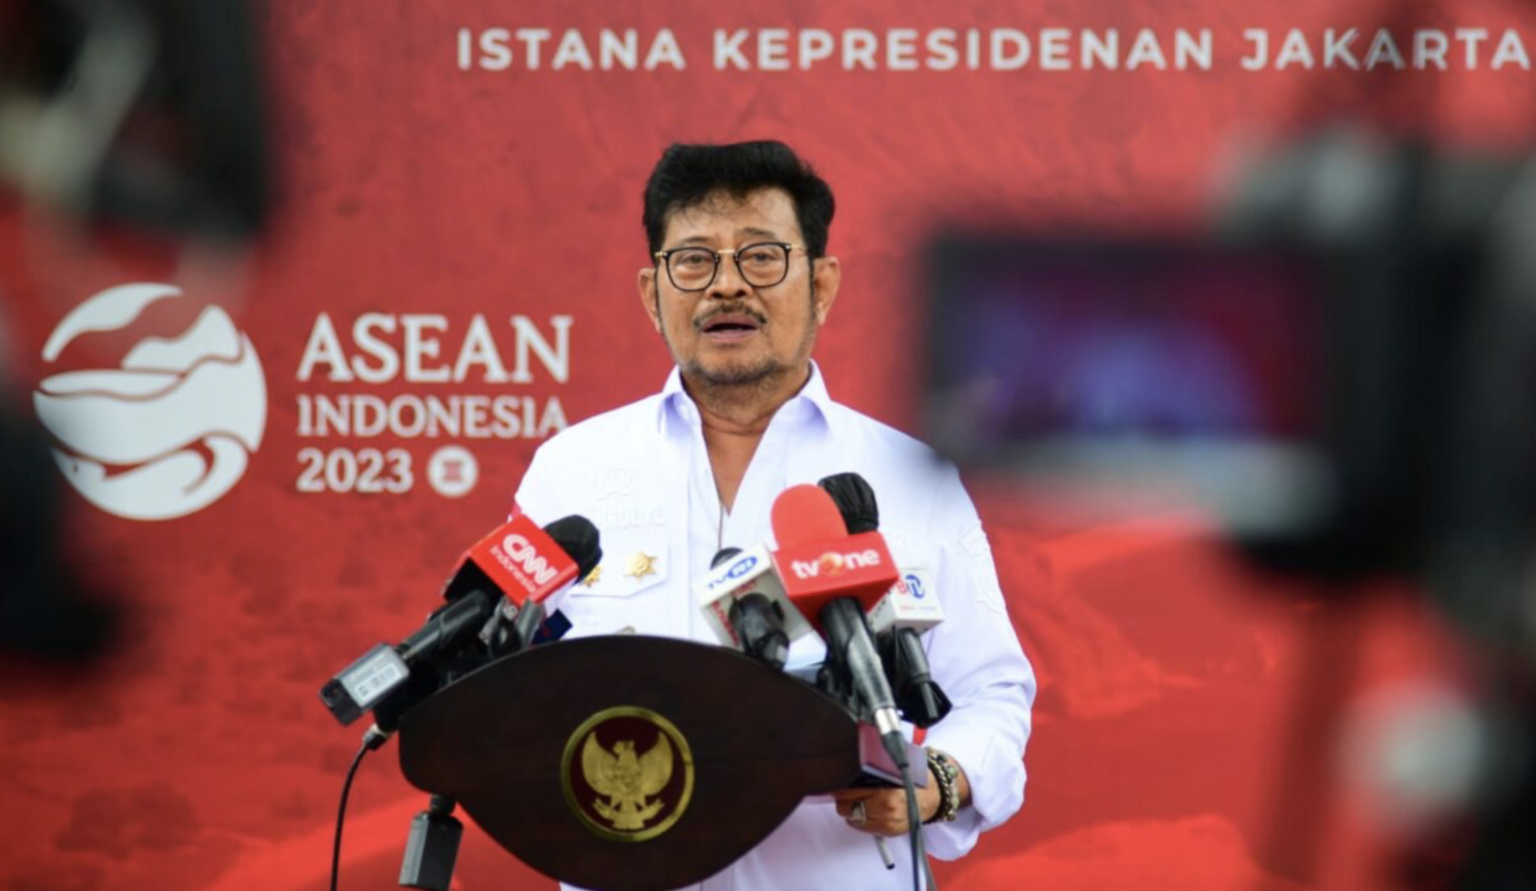 Menteri Pertanian Syahrul Yasin Limpo memberikan keterangan di Kompleks Istana Kepresidenan, Jakarta, pada Jumat, 24 Februari 2023. Foto: BPMI Setpres/Muchlis Jr.